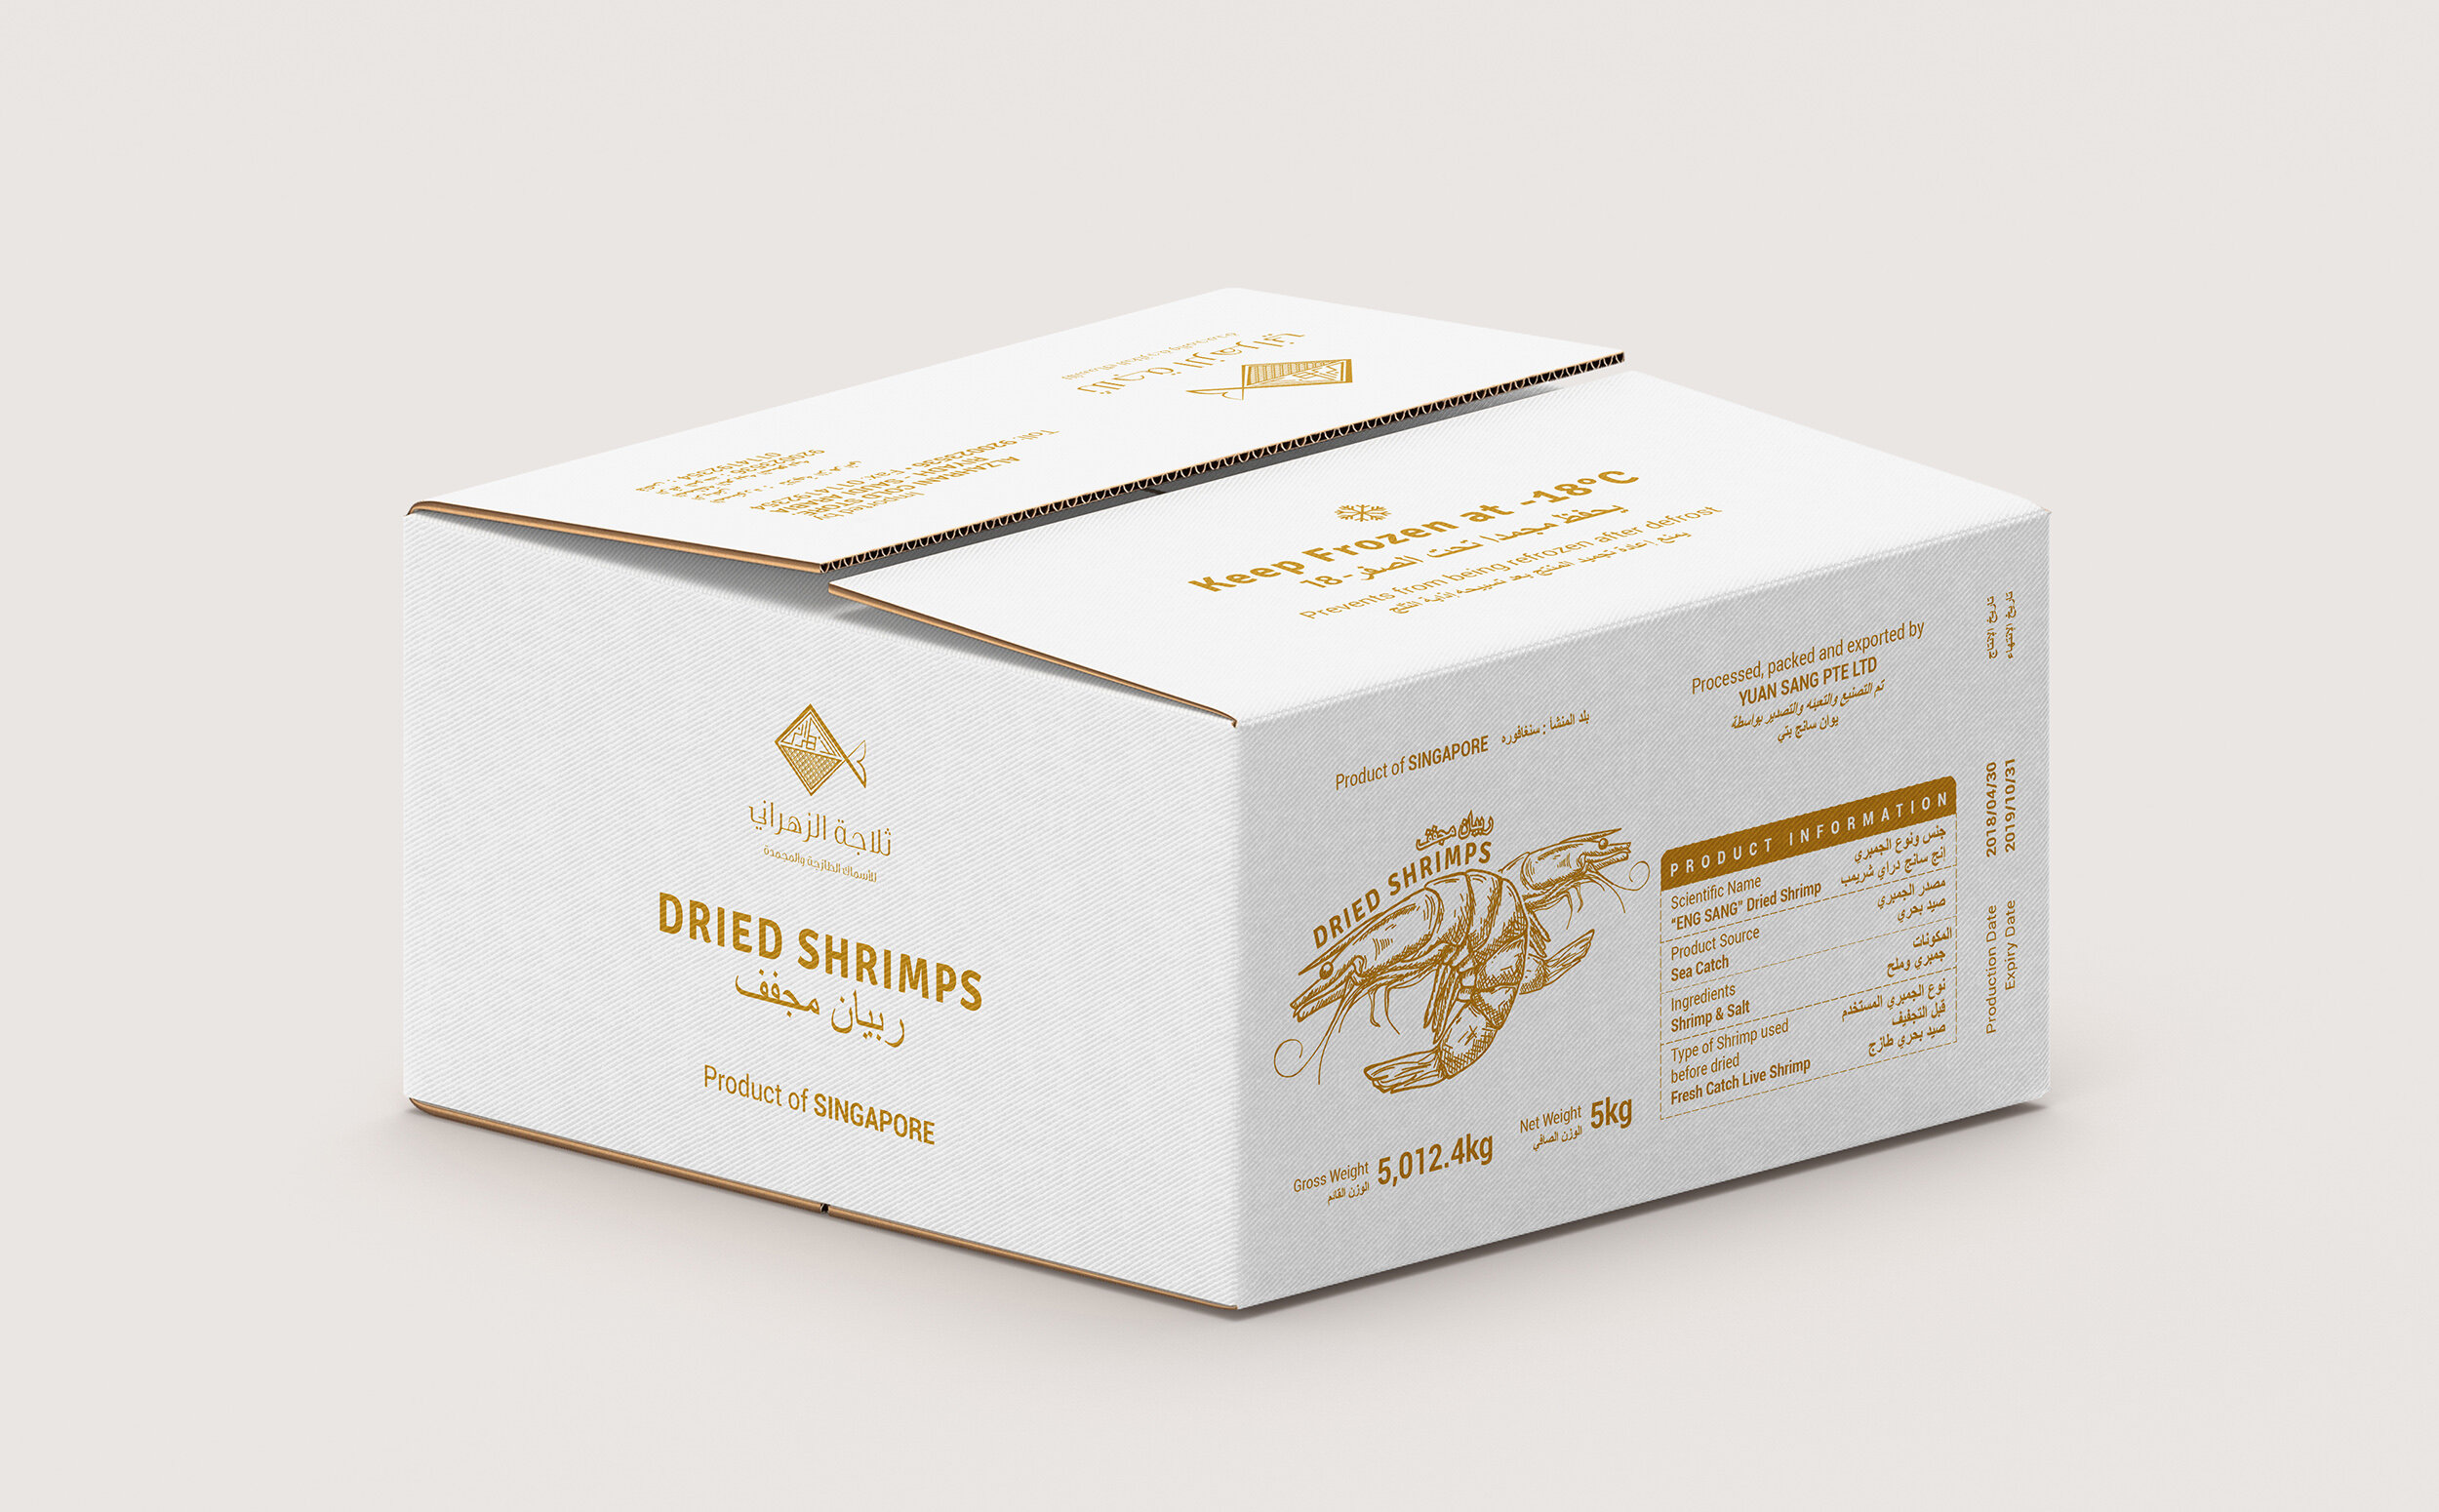 Yuan Sang Dried Shrimps Saudi Arabia Export Carton Box Design (Packaging Design by YANA Singapore Freelance Designer).jpg